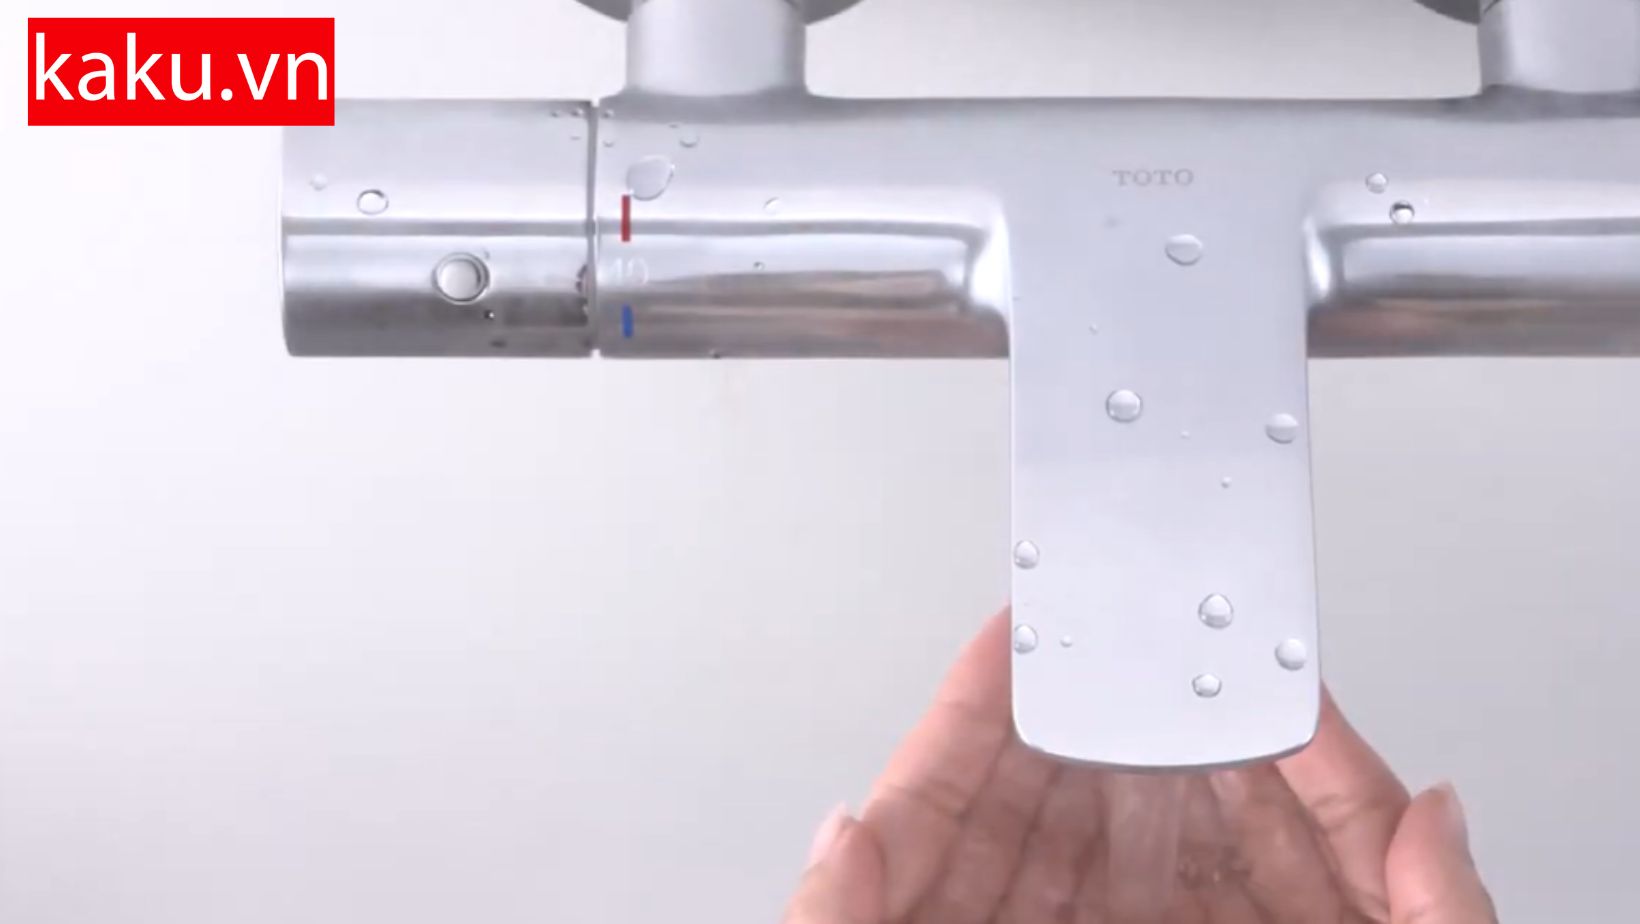 Sen tắm TOTO Nhật Công nghệ chống bỏng Heat Protect01